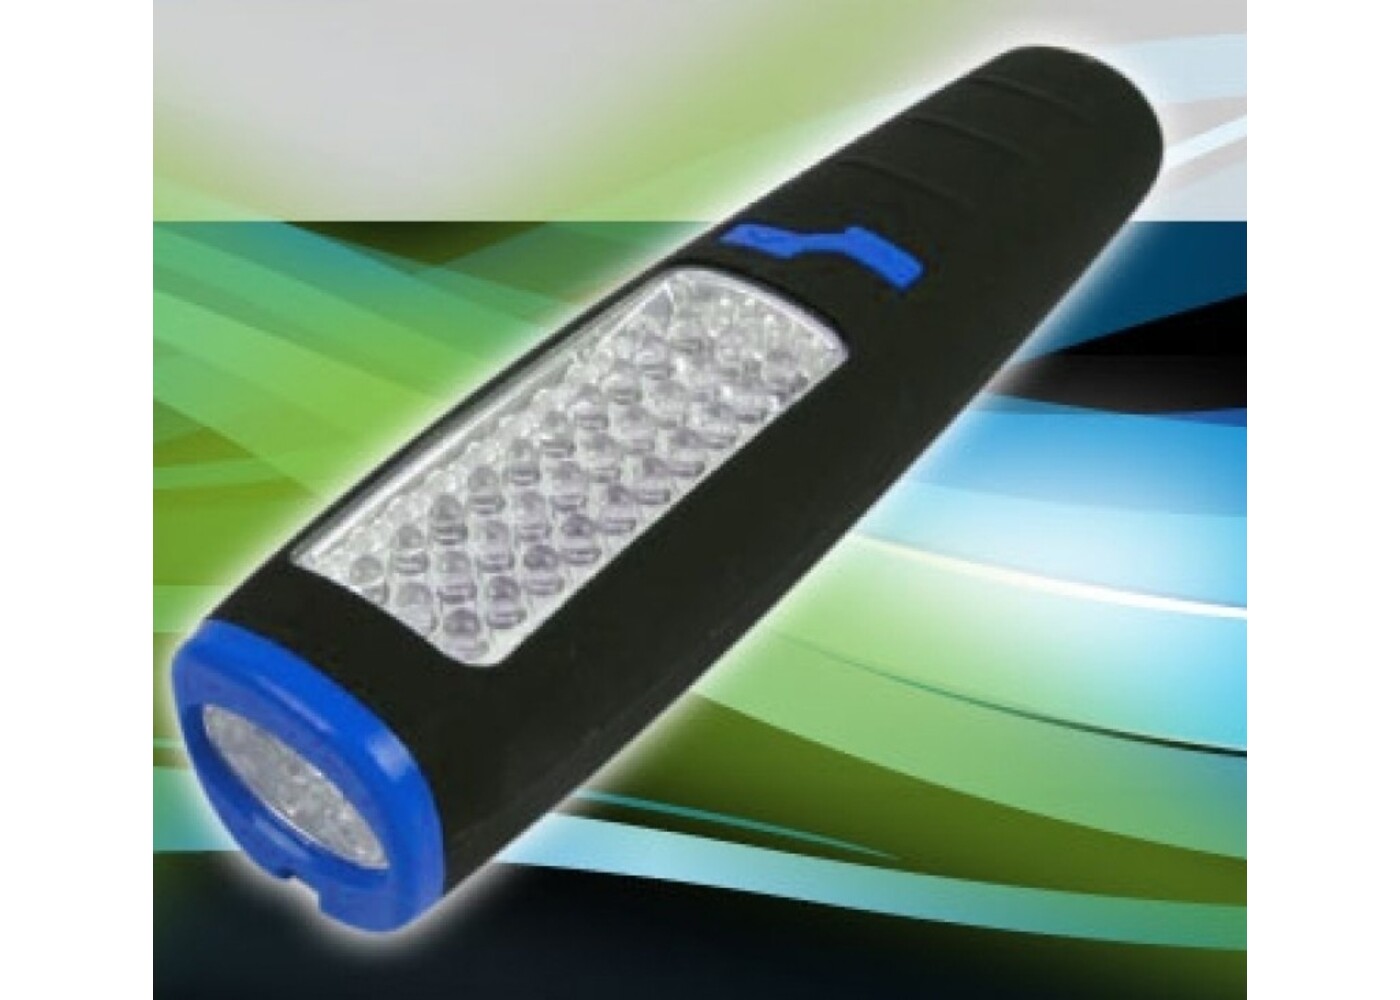 Hortiline Worklight LED Taschenlampe mit grünem Licht